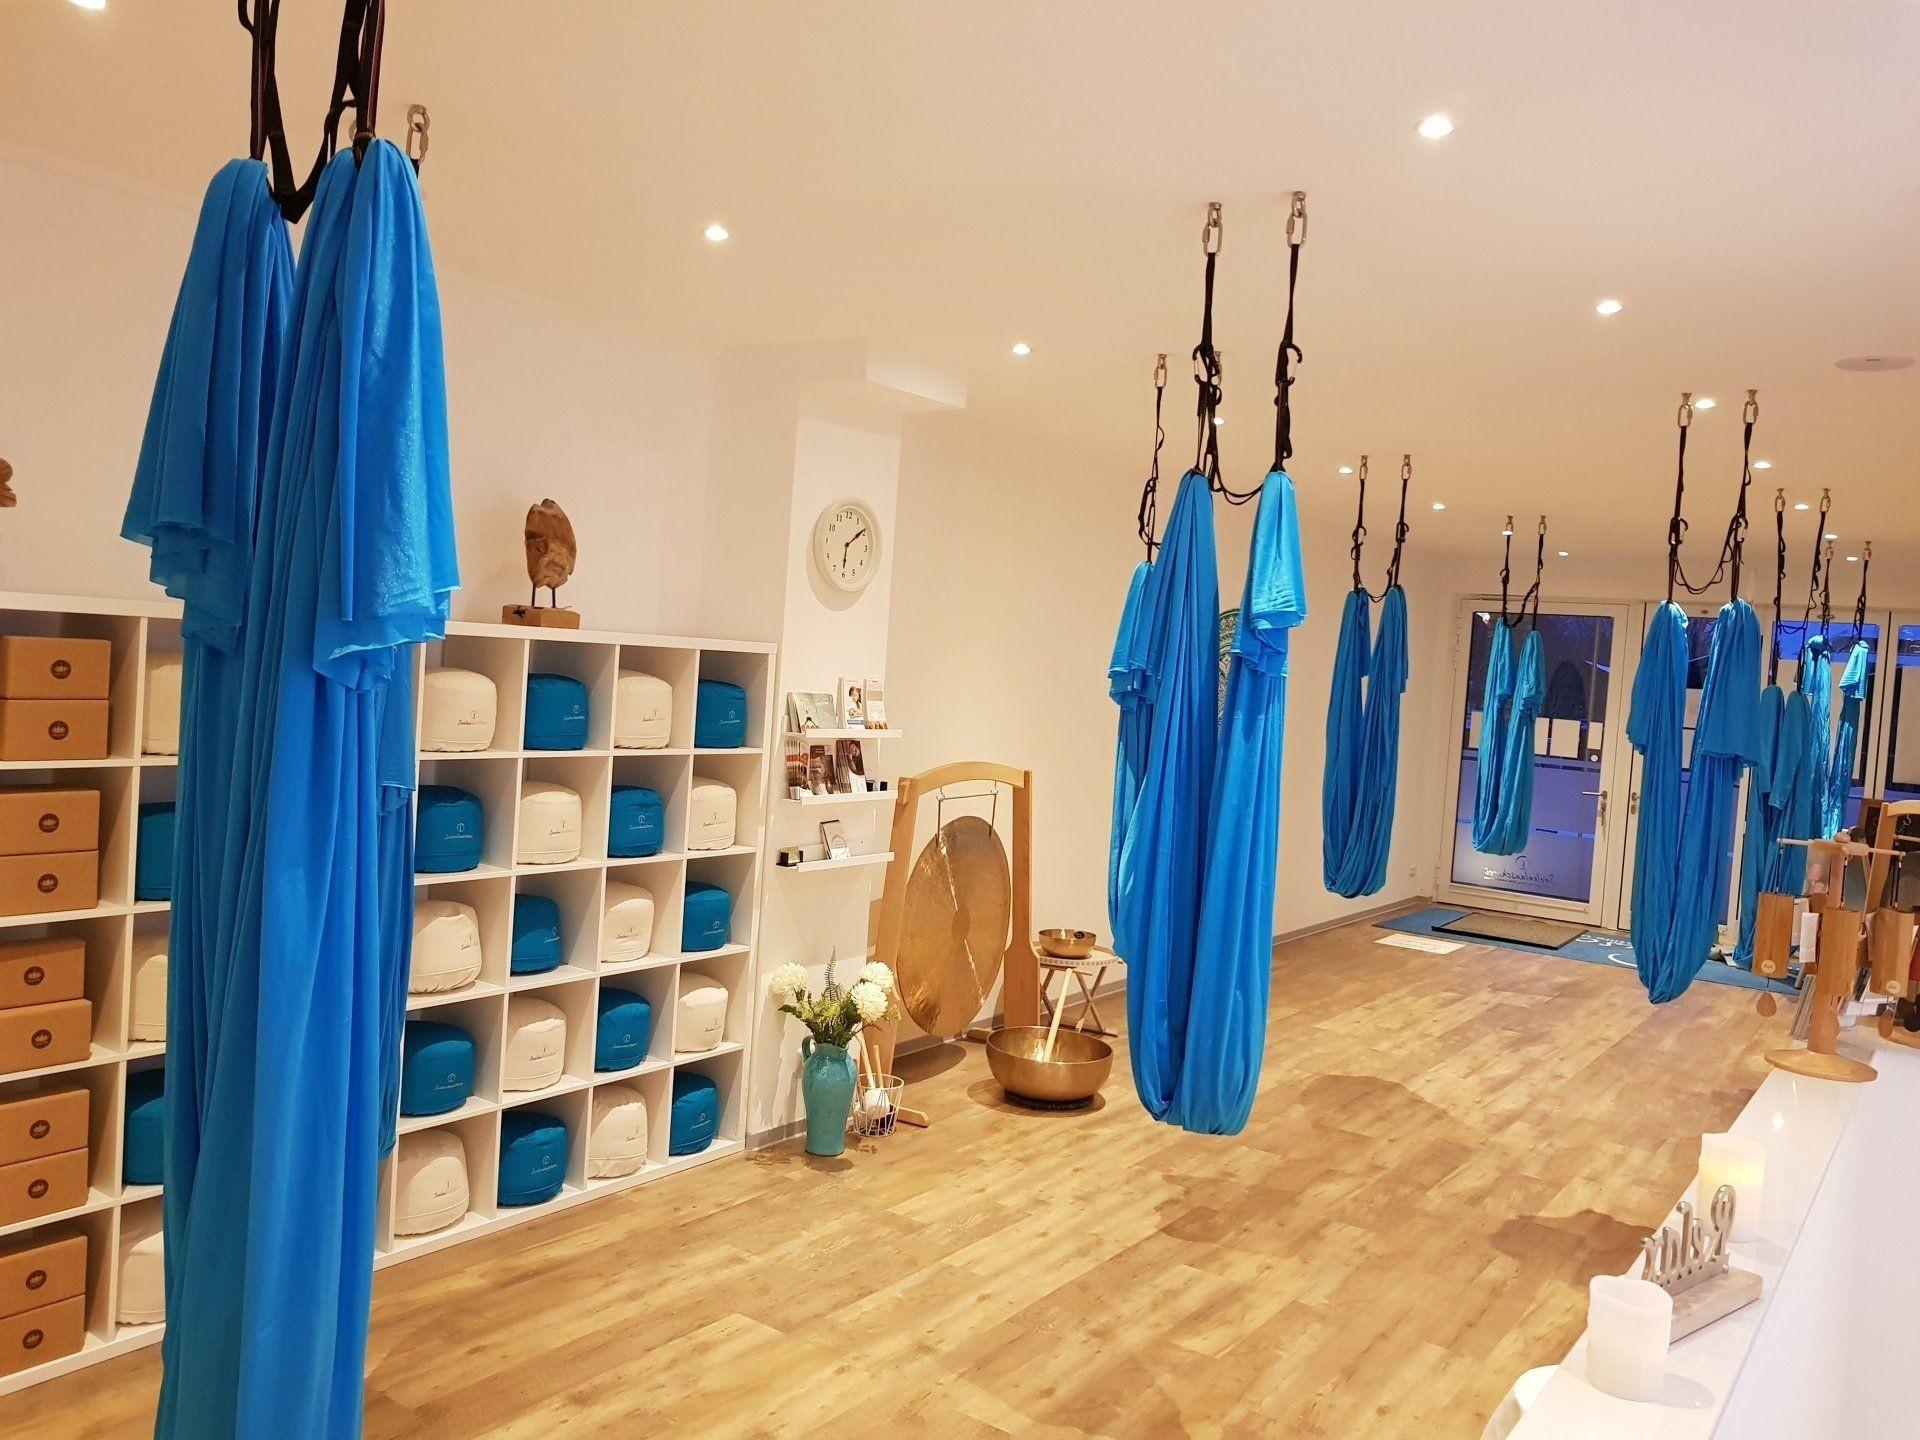 Aerial-Yoga-Tücher hängen in einem Raum von der Decke